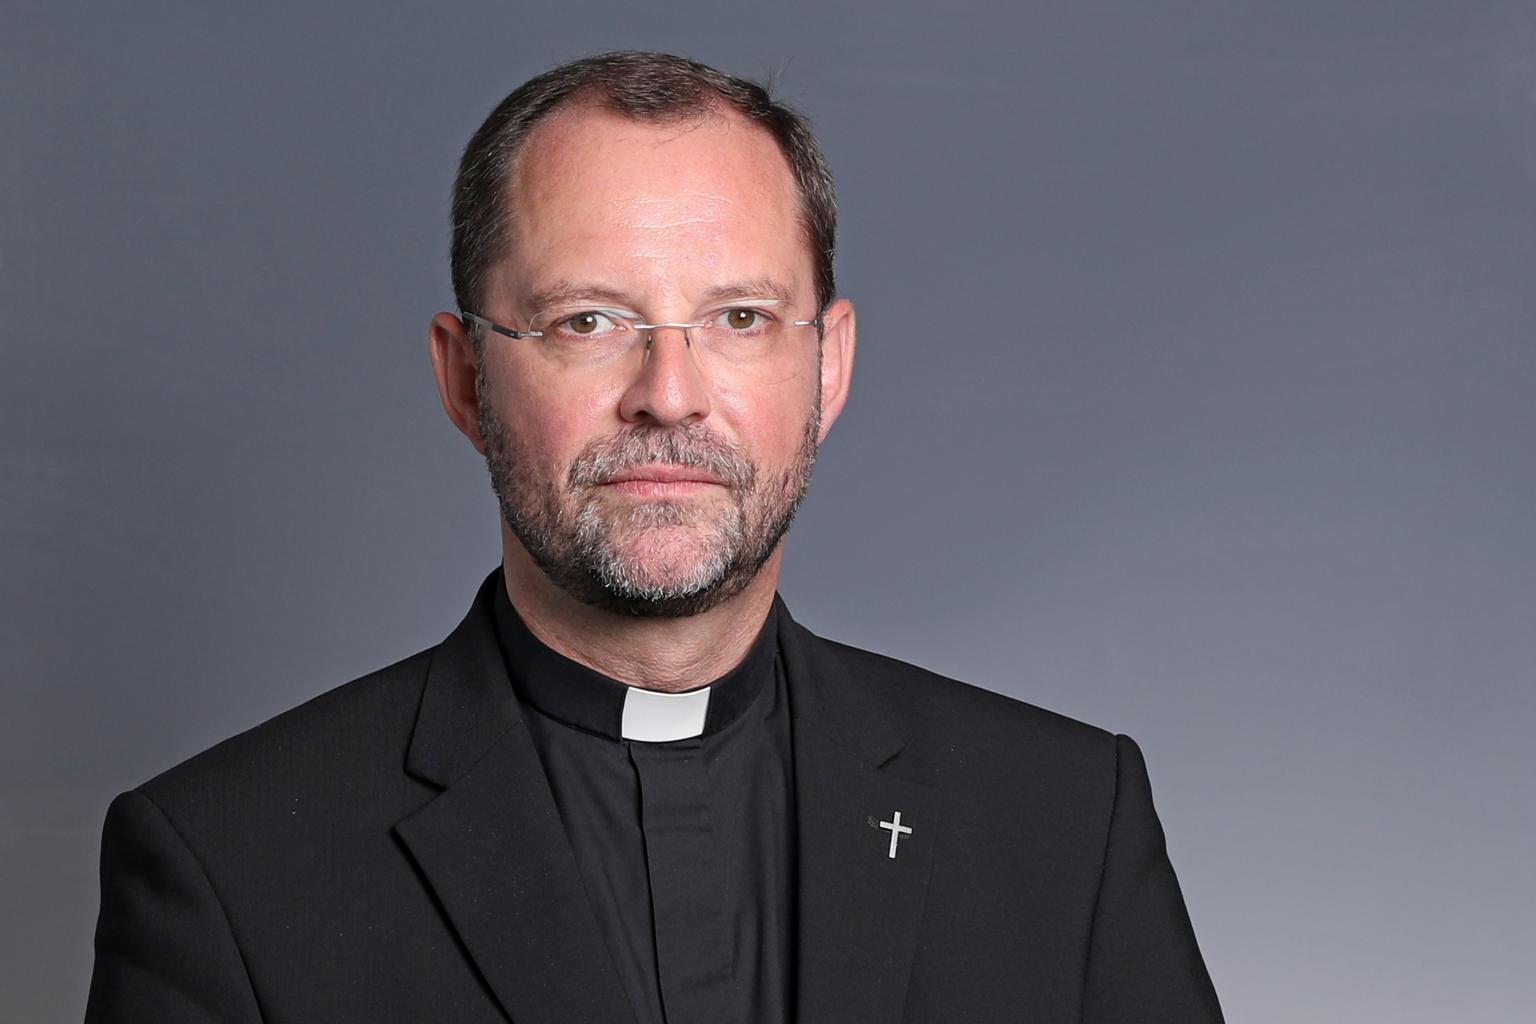 Generalvikar Dr. Andres Frick wendet sich mit einem Brief an die Mitarbeitenden und Priester im Bistum Aachen. (c) Bistum Aachen / Andreas Steindl